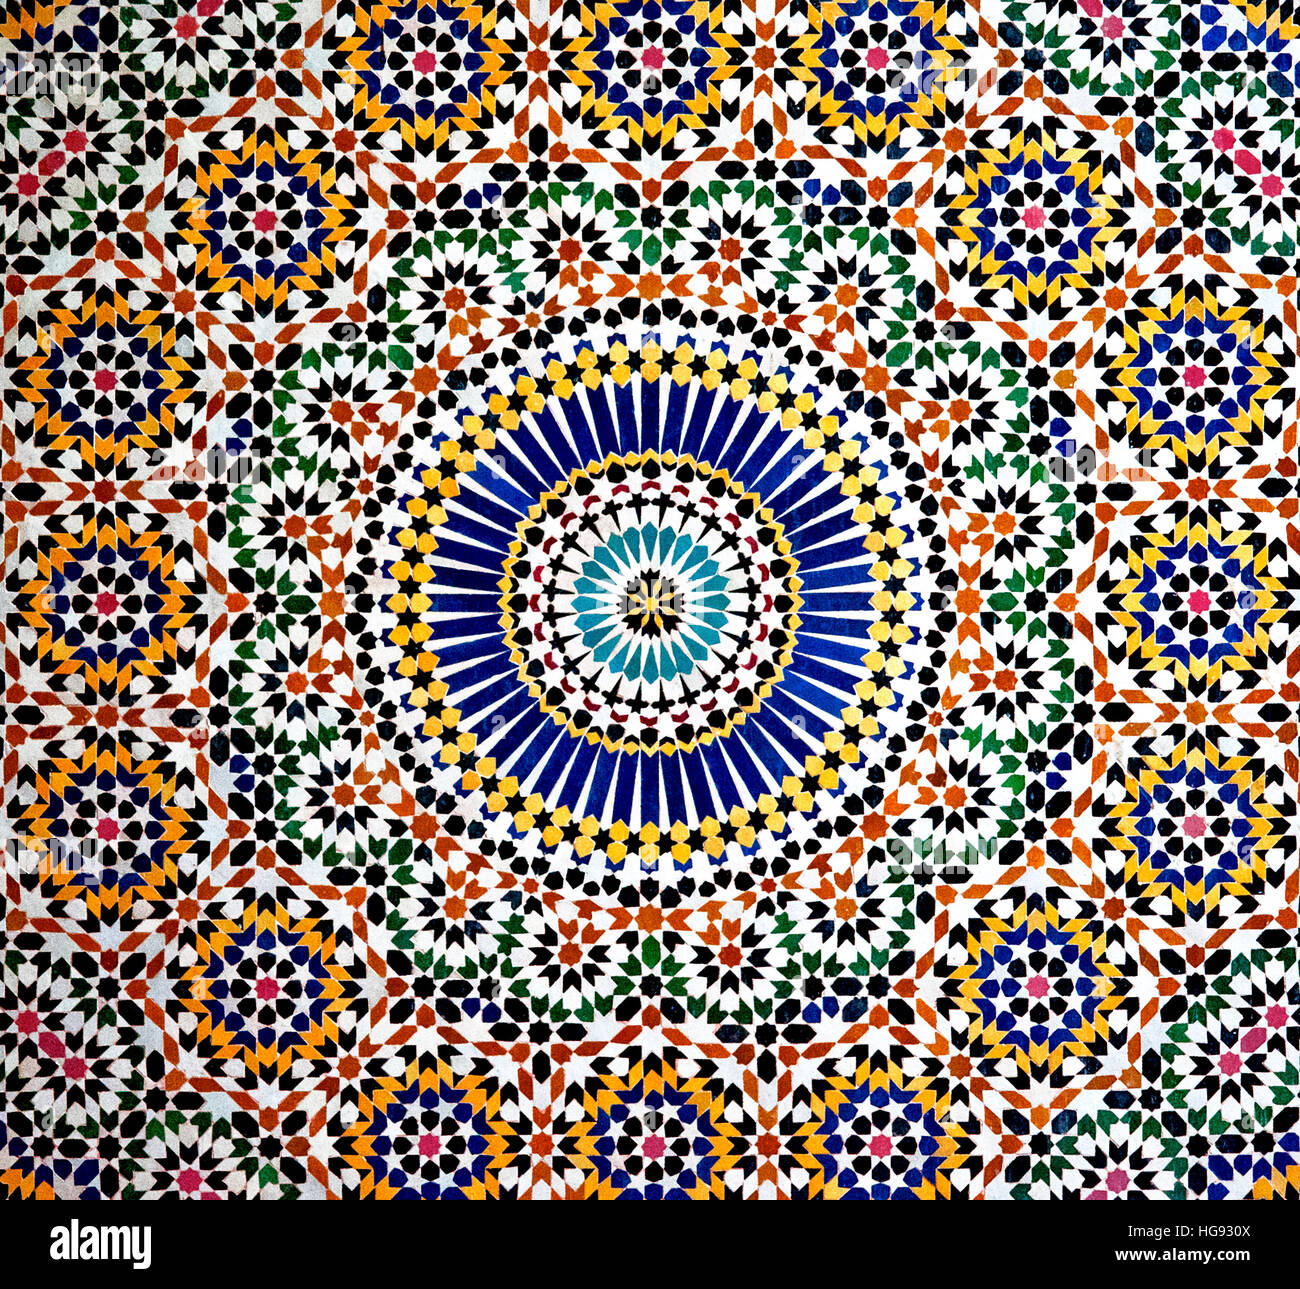 La mosaïque islamique, Kasbah TELOUET, Maroc, 2016 : les modèles colorés d'une mosaïque islamique décorent les murs de la Casbah Telouet. Banque D'Images